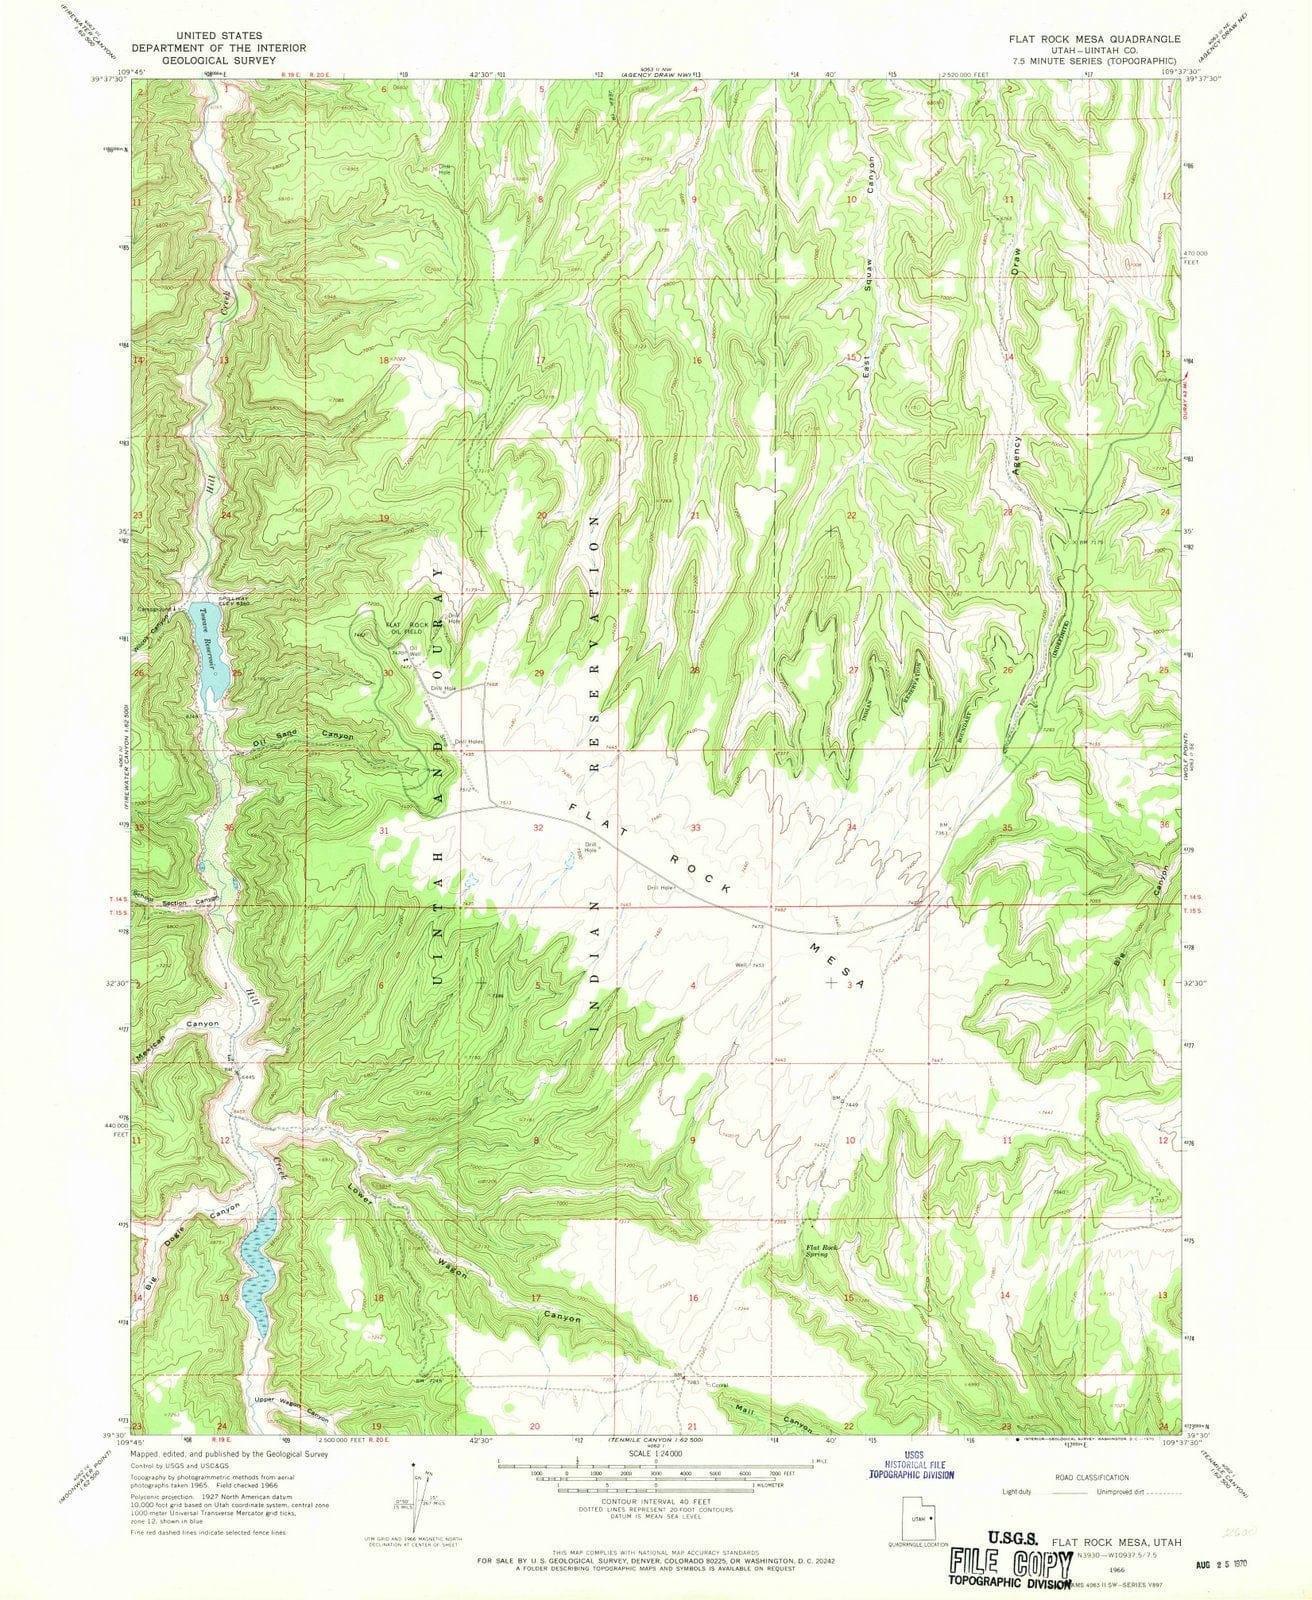 1966 Flat Rock Mesa, UT - Utah - USGS Topographic Map